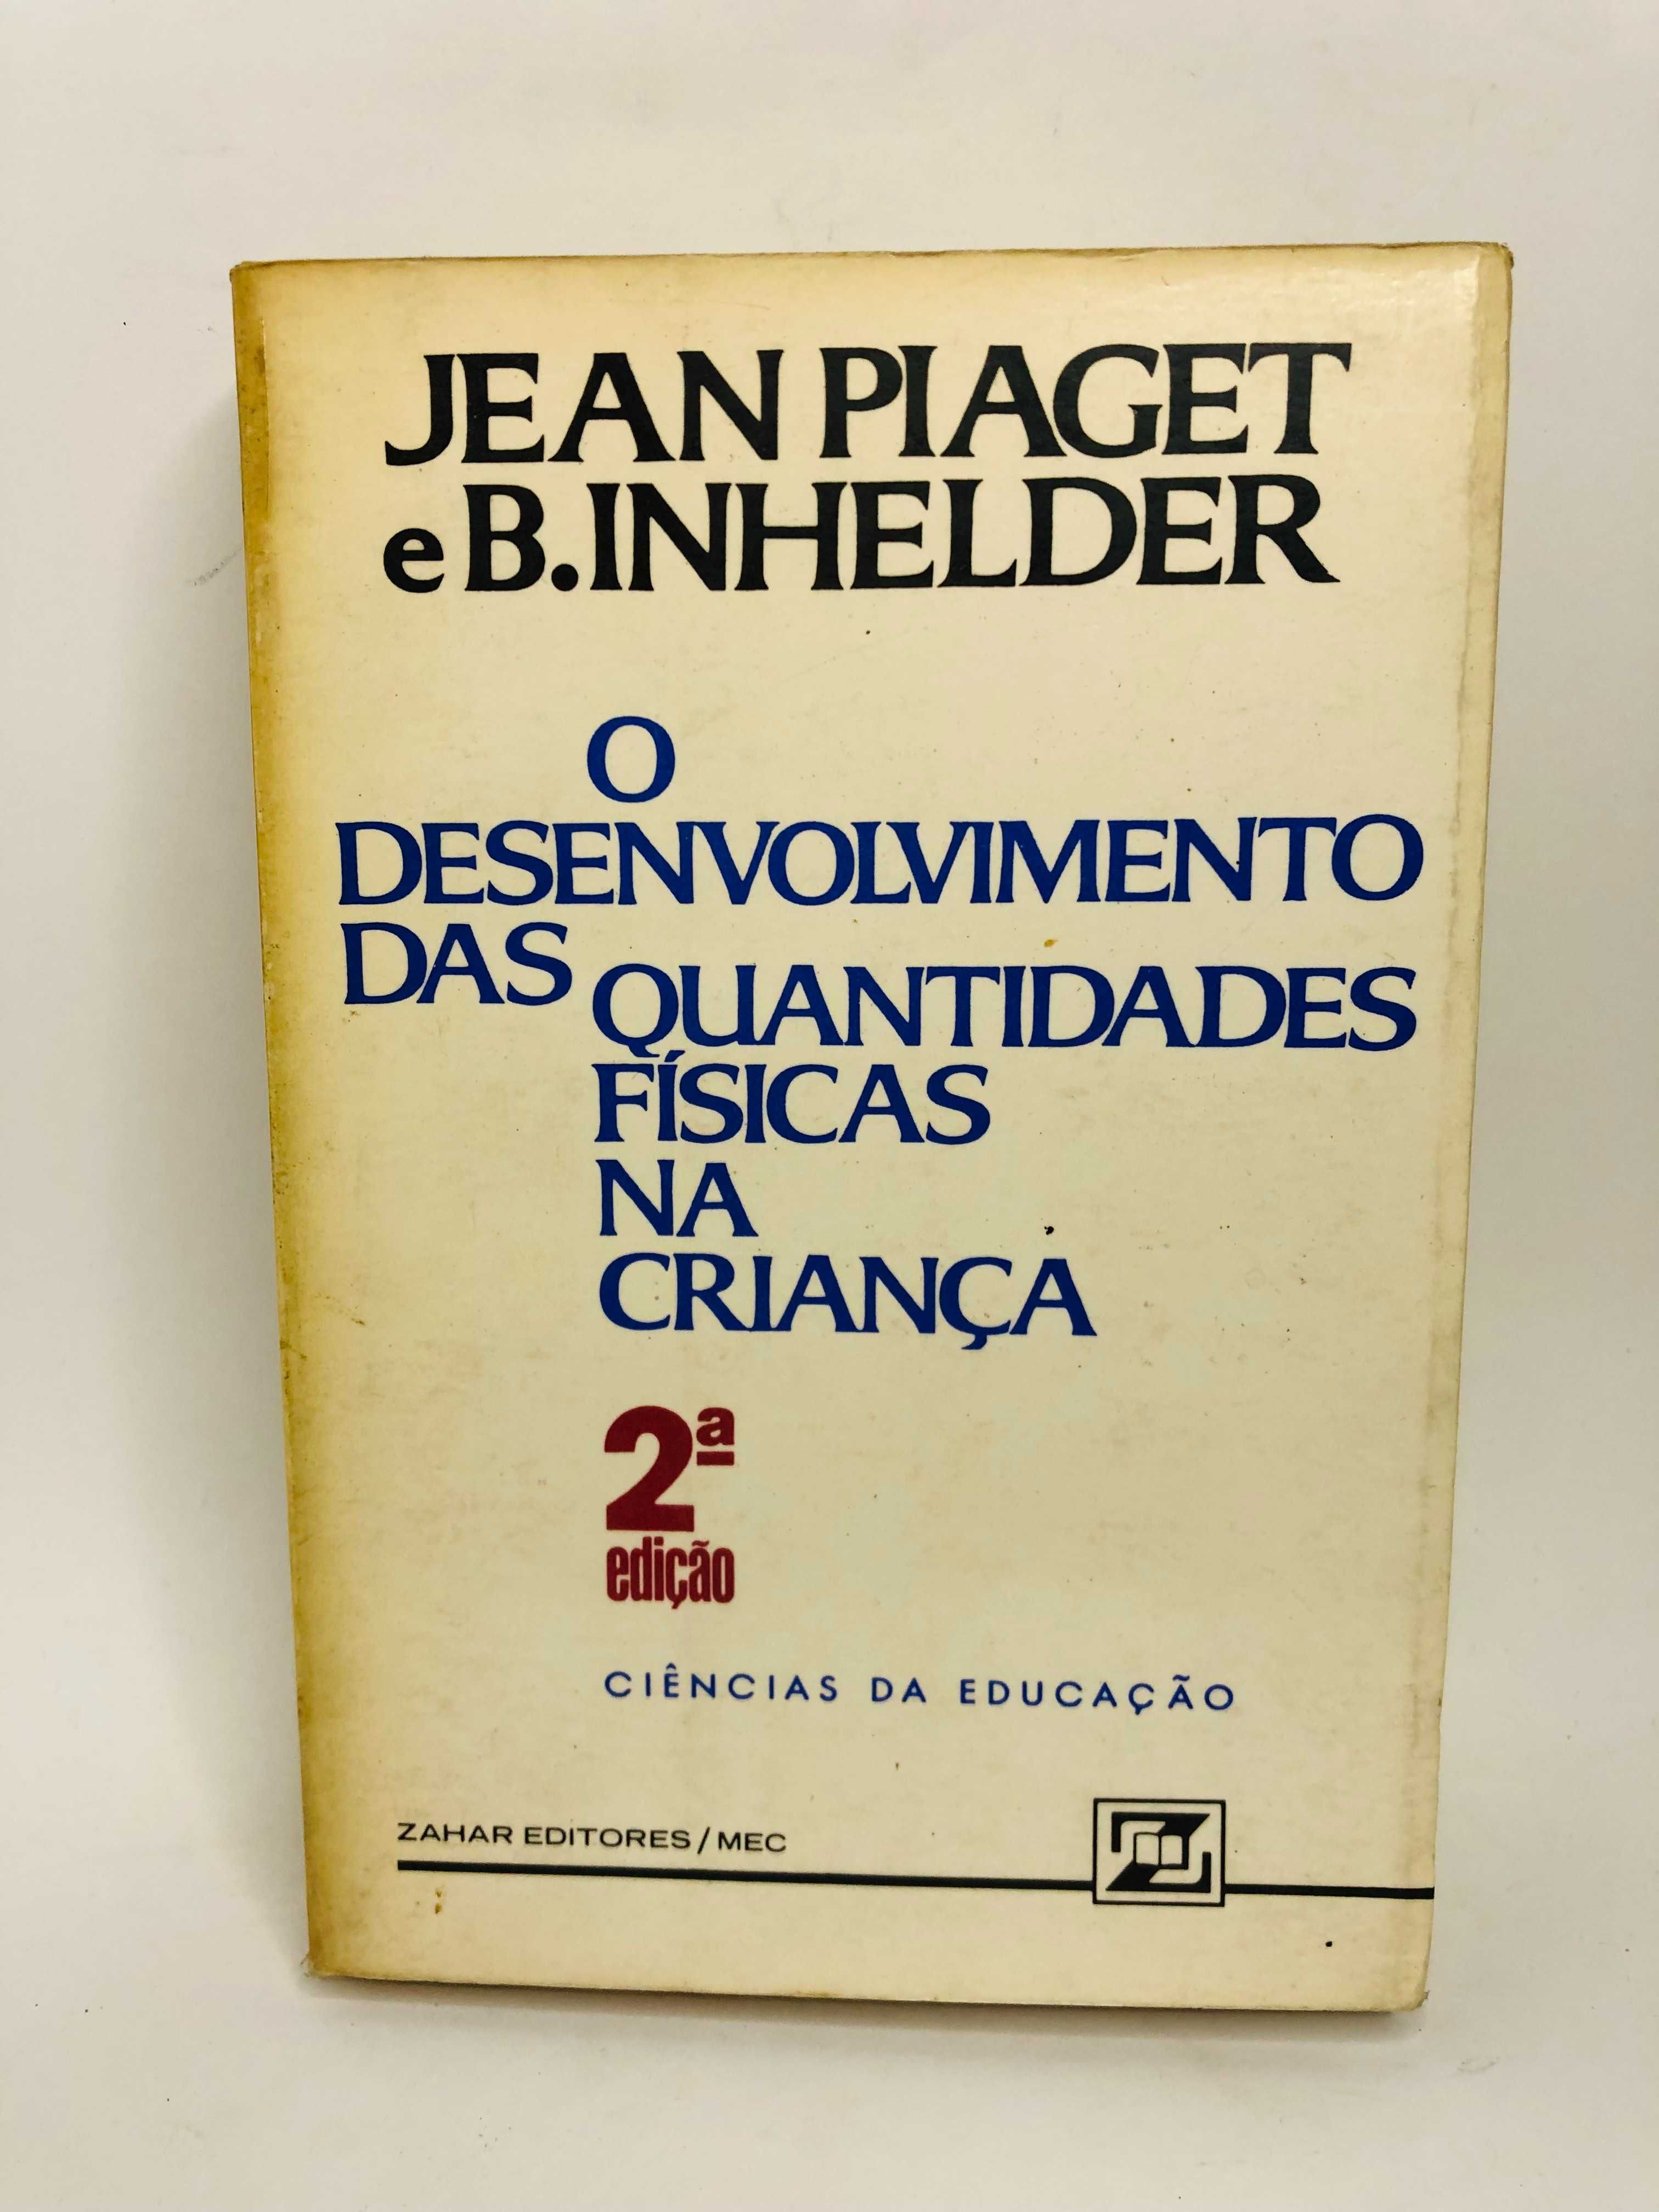 O Desenvolvimento das Quantidade Física na Criança - Jean Piaget